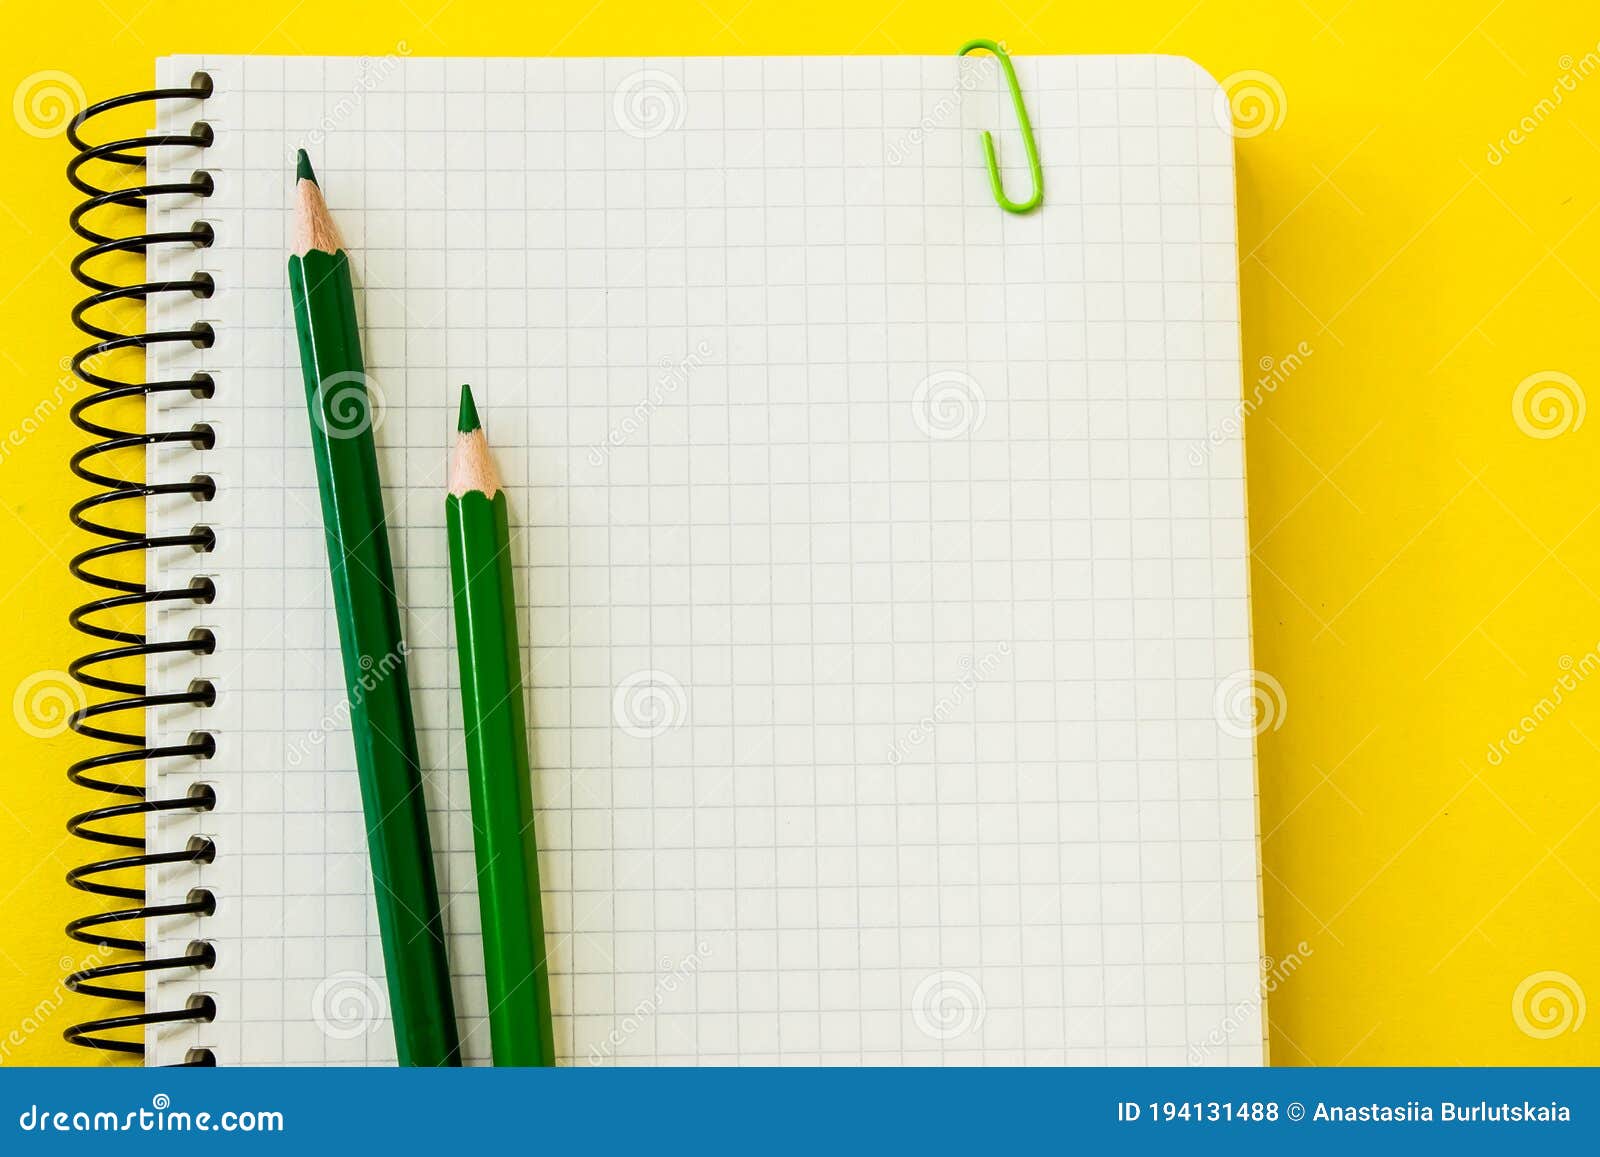 Bộ bút chì xanh đậm là nguồn cảm hứng cho sự sáng tạo và sự đặc biệt. Với đầy đủ các cỡ chì từ 6B đến 4H, bạn sẽ có nhiều sự lựa chọn trong việc sáng tác nghệ thuật hay viết bài. Hãy xem hình ảnh để khám phá sức mạnh của một cây bút chì xanh!